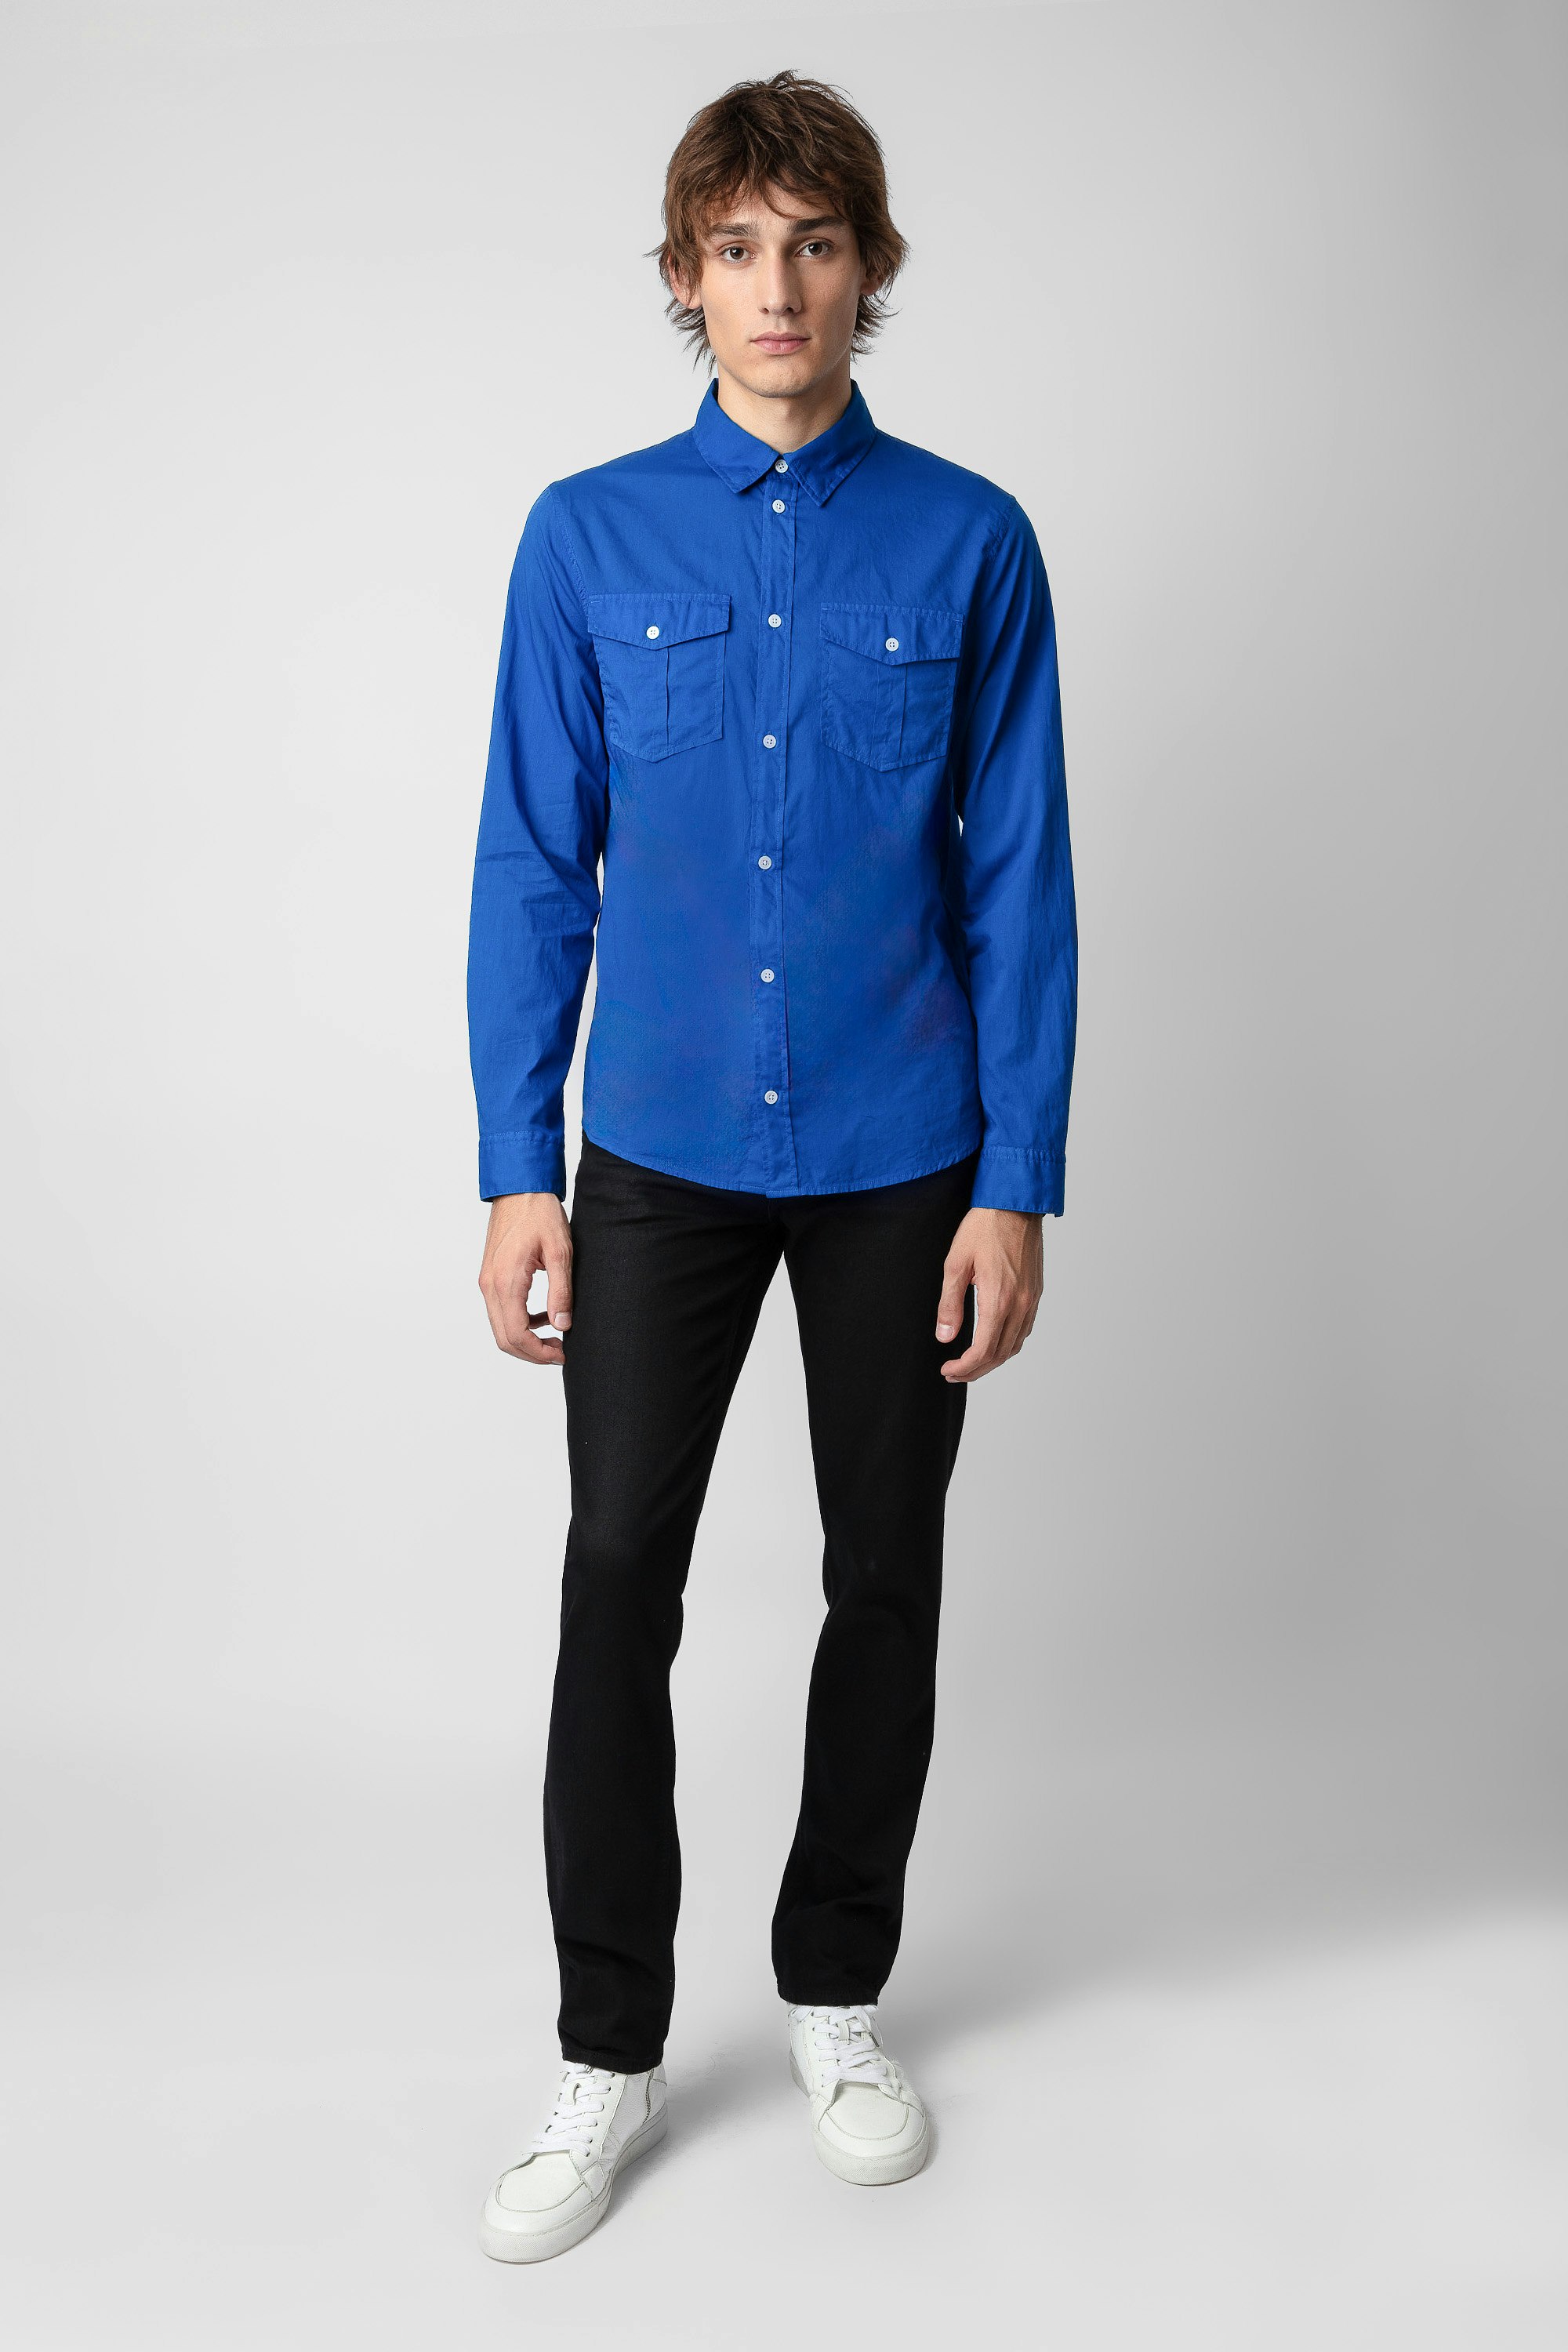 Camicia Thibault  - Camicia da uomo in cotone blu.